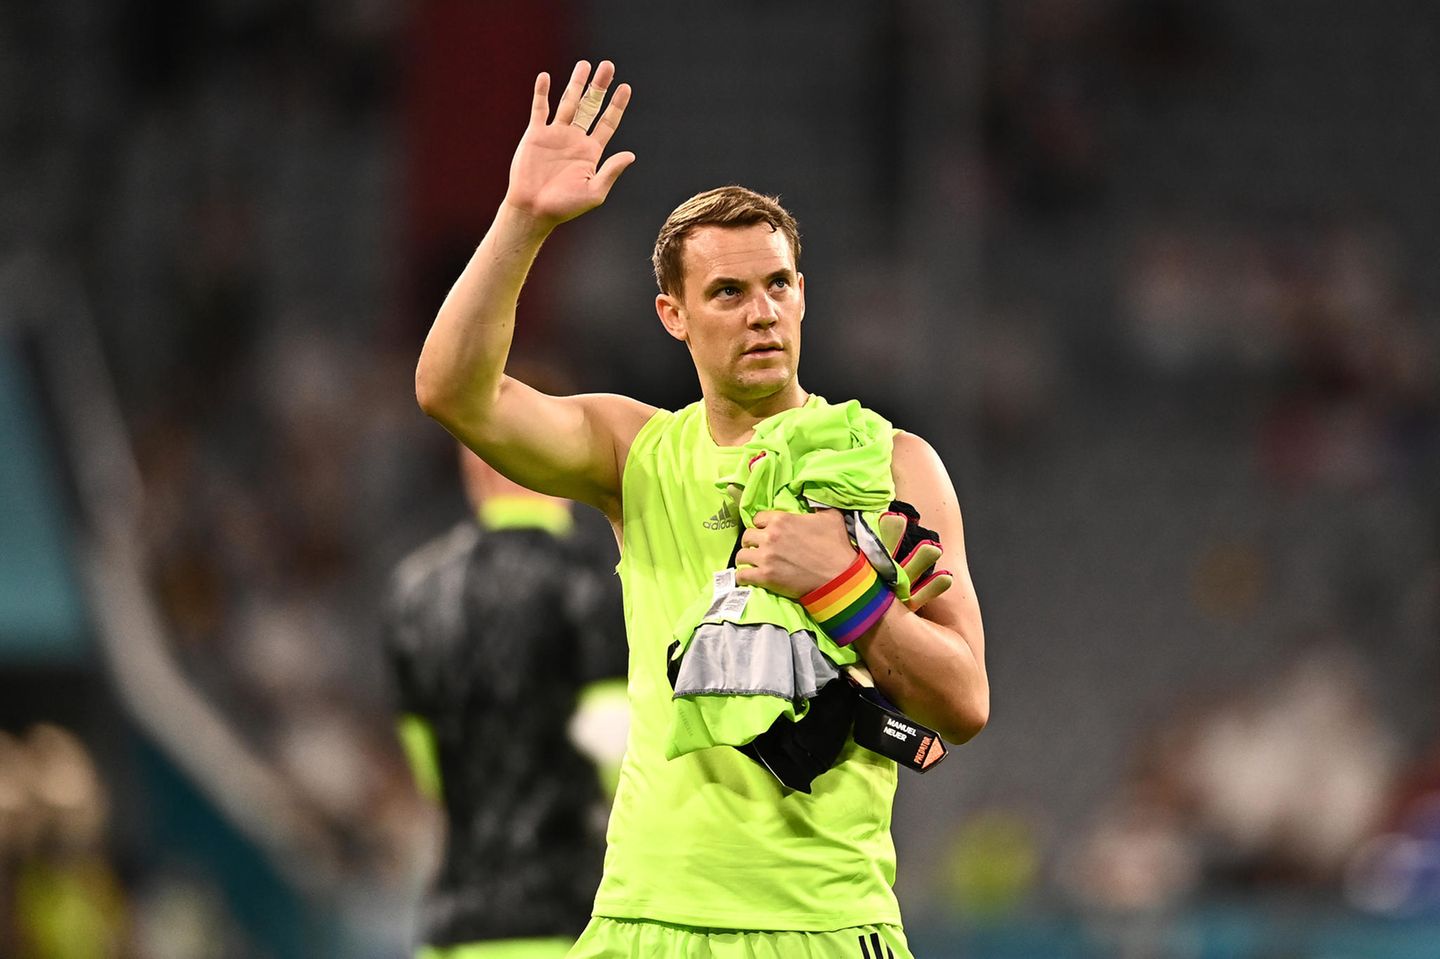 Starke Botschaft von Manuel Neuer! Das erste EM-Spiel der deutschen Nationalmannschaft bestreitet er mit einer Armbinde in Regenbogenfarben. Damit unterstützt er die LGBTQIA*-Community während des Pride-Monats und zeigt Haltung.